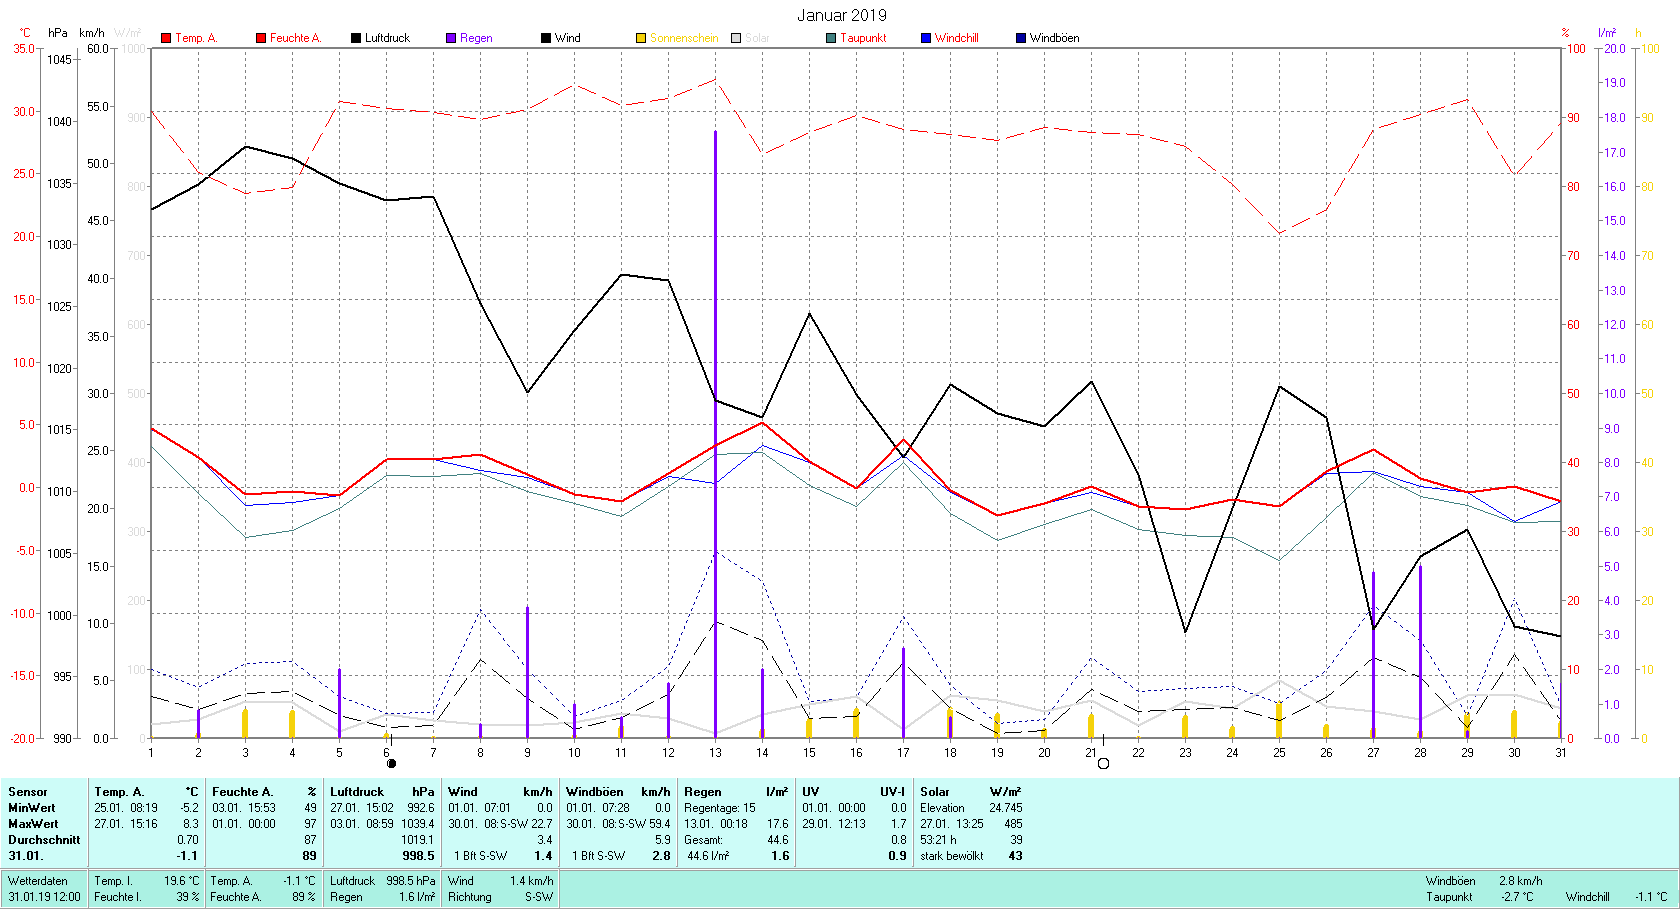  Januar 2019 Tmin -5.2°C, Tmax 8.3°C, Sonne 53:21 h, Niederschlag 44.6mm/2